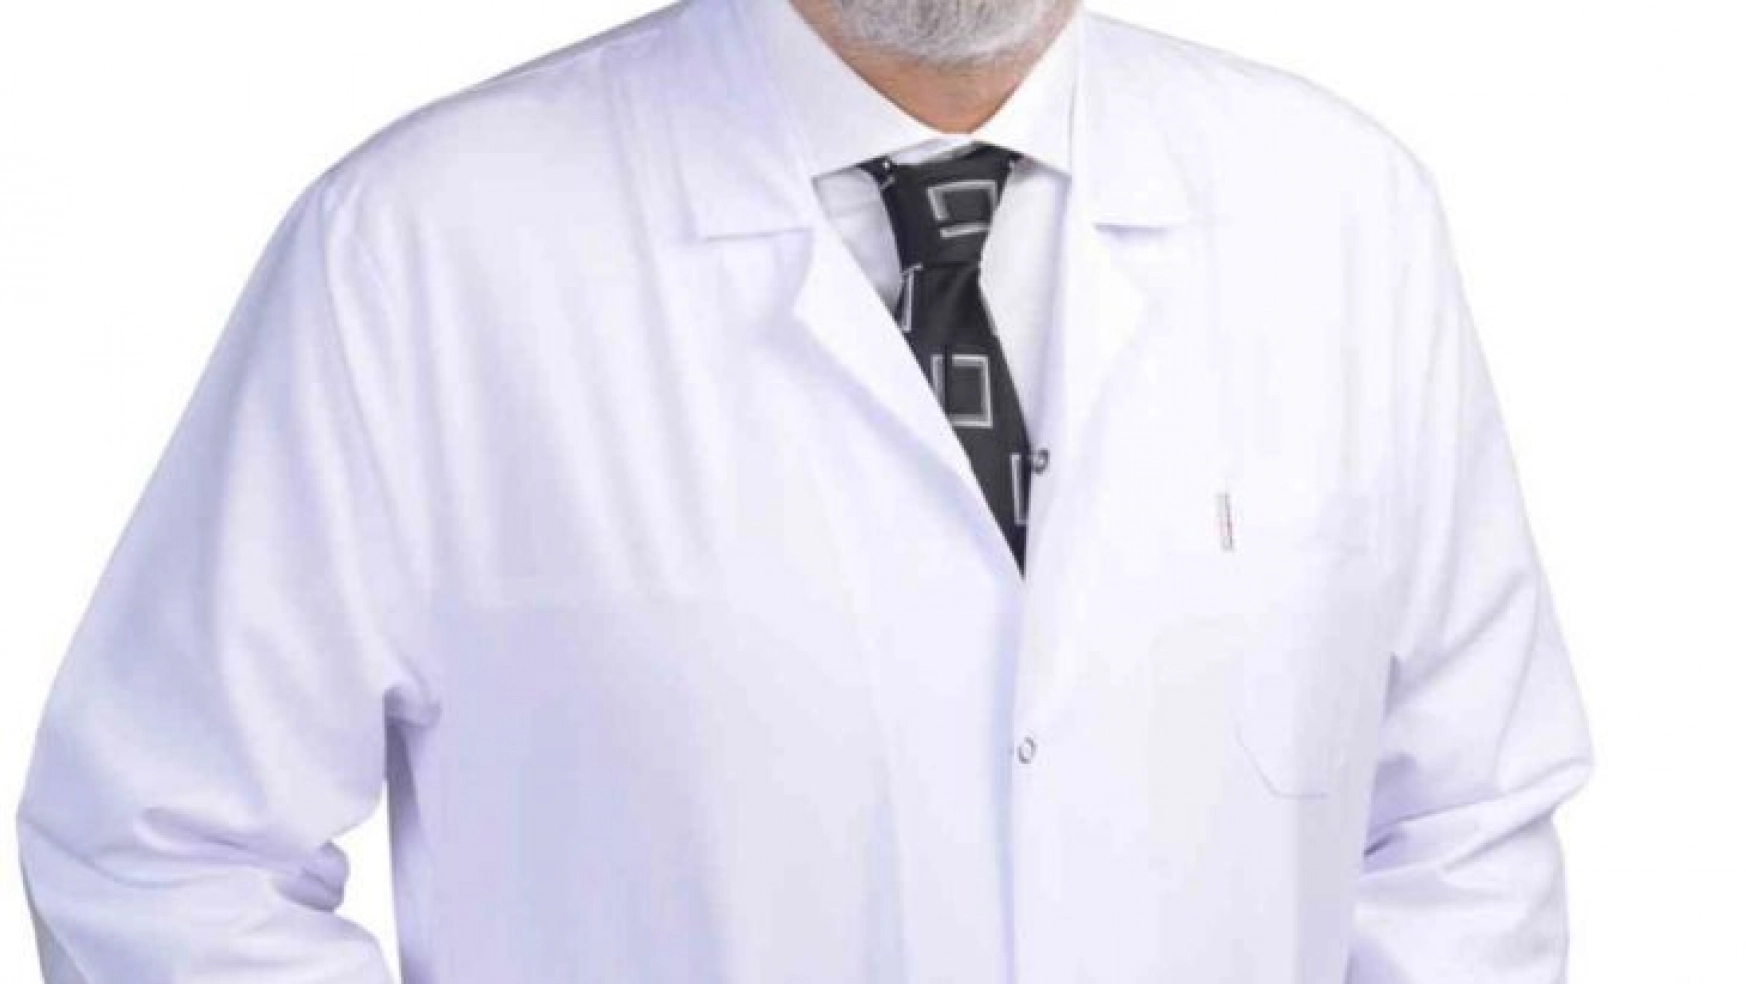 Nöroloji Uzmanı Dr. Kara: 'Migrenden botoks ile kurtulabilirsiniz'